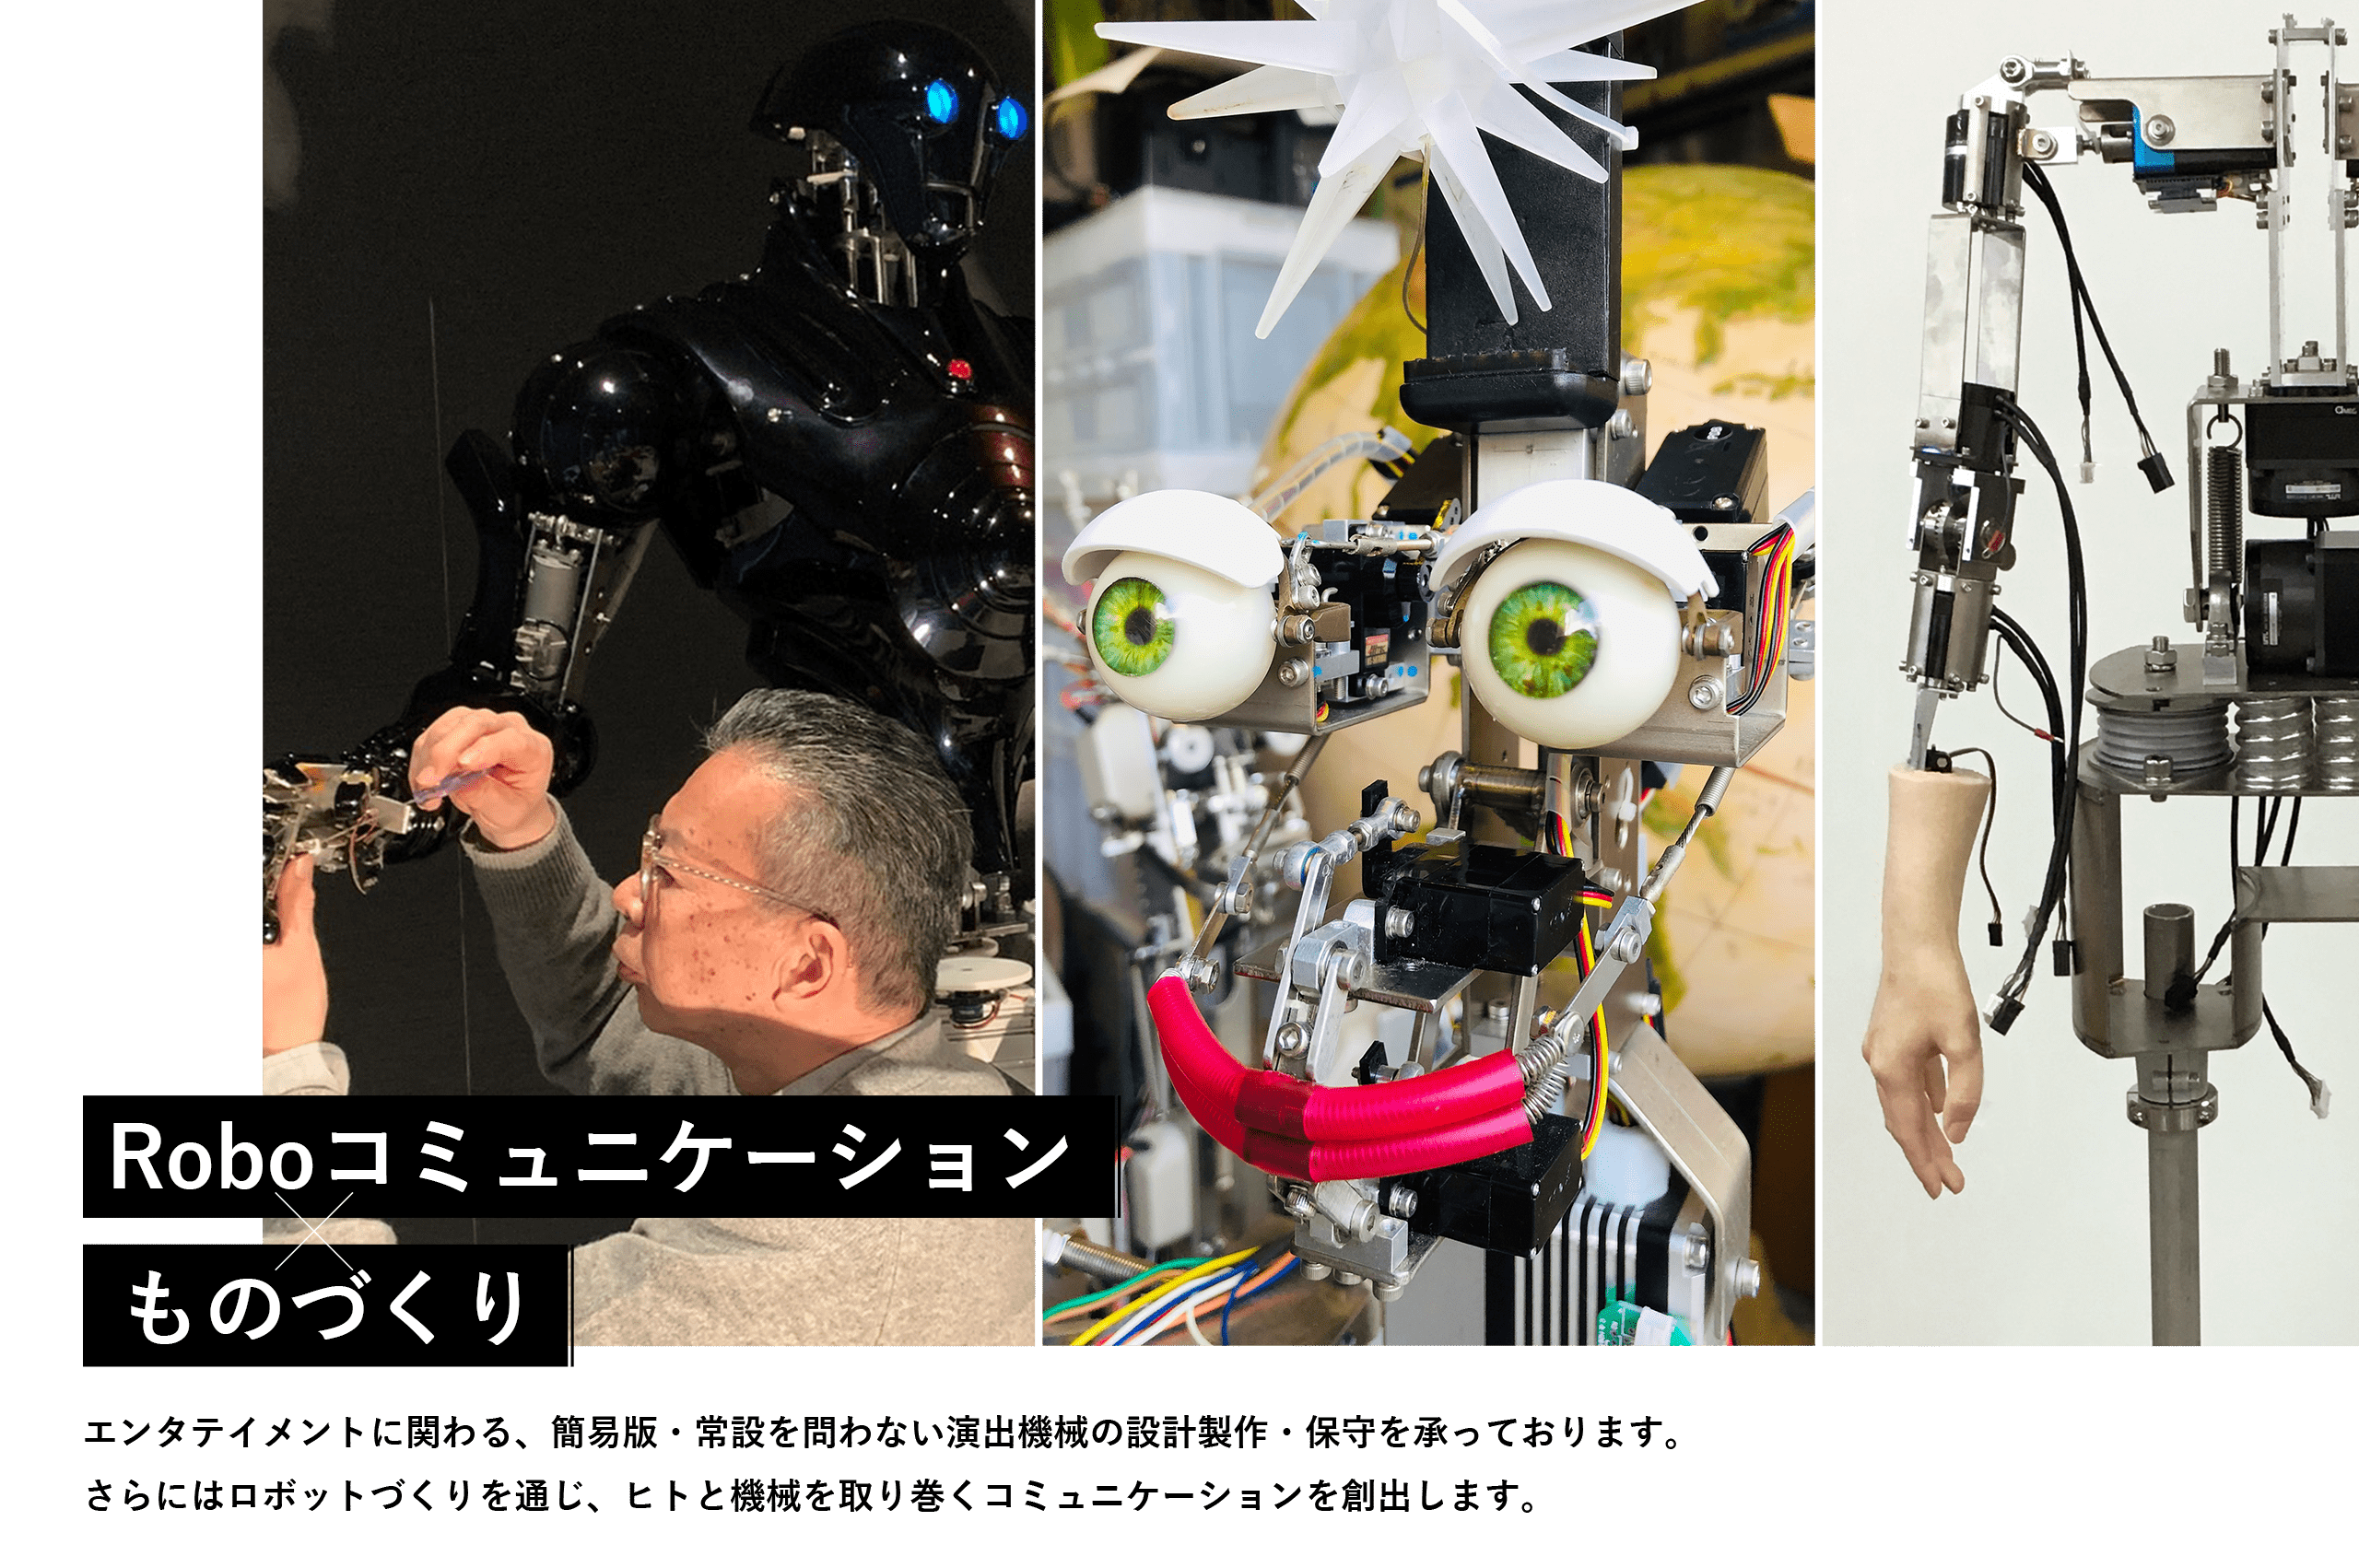 【Roboコミュニケーション×ものづくり】エンタテイメントに関わる、簡易版・常設を問わない演出機械の設計製作・保守を承っております。さらにはロボットづくりを通じ、ヒトと機械を取り巻くコミュニケーションを創出します。